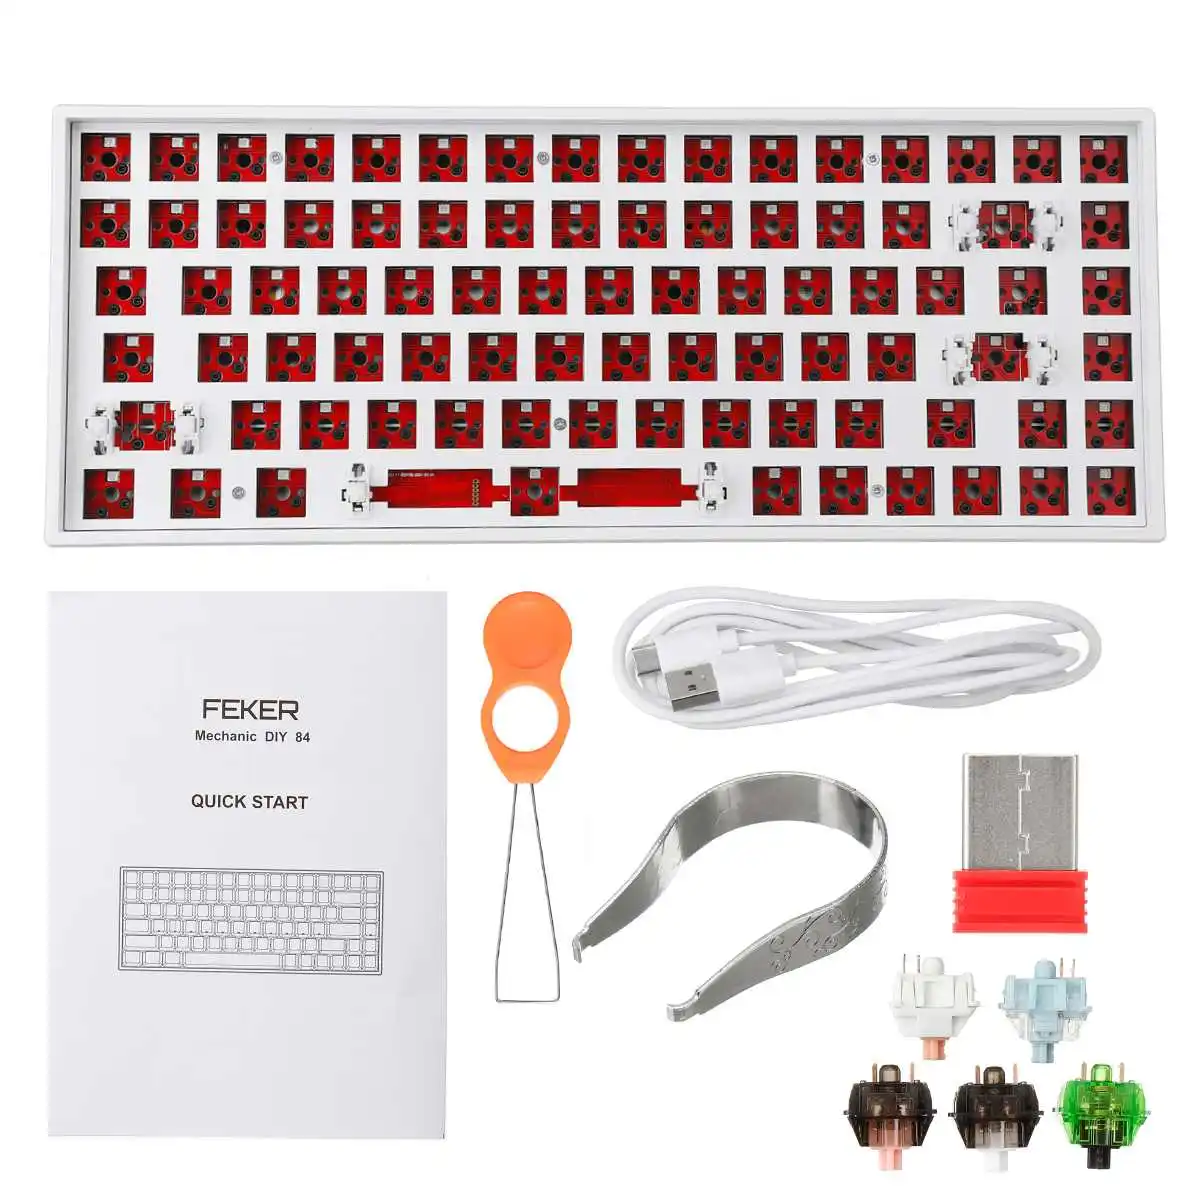 

FEKER DIY Keyboard Customized Kit Triple Mode 84 Keys Hotswap bluetooth 2.4Ghz NKRO Backlit Mute Cotton Mechanical Keyboard Kit